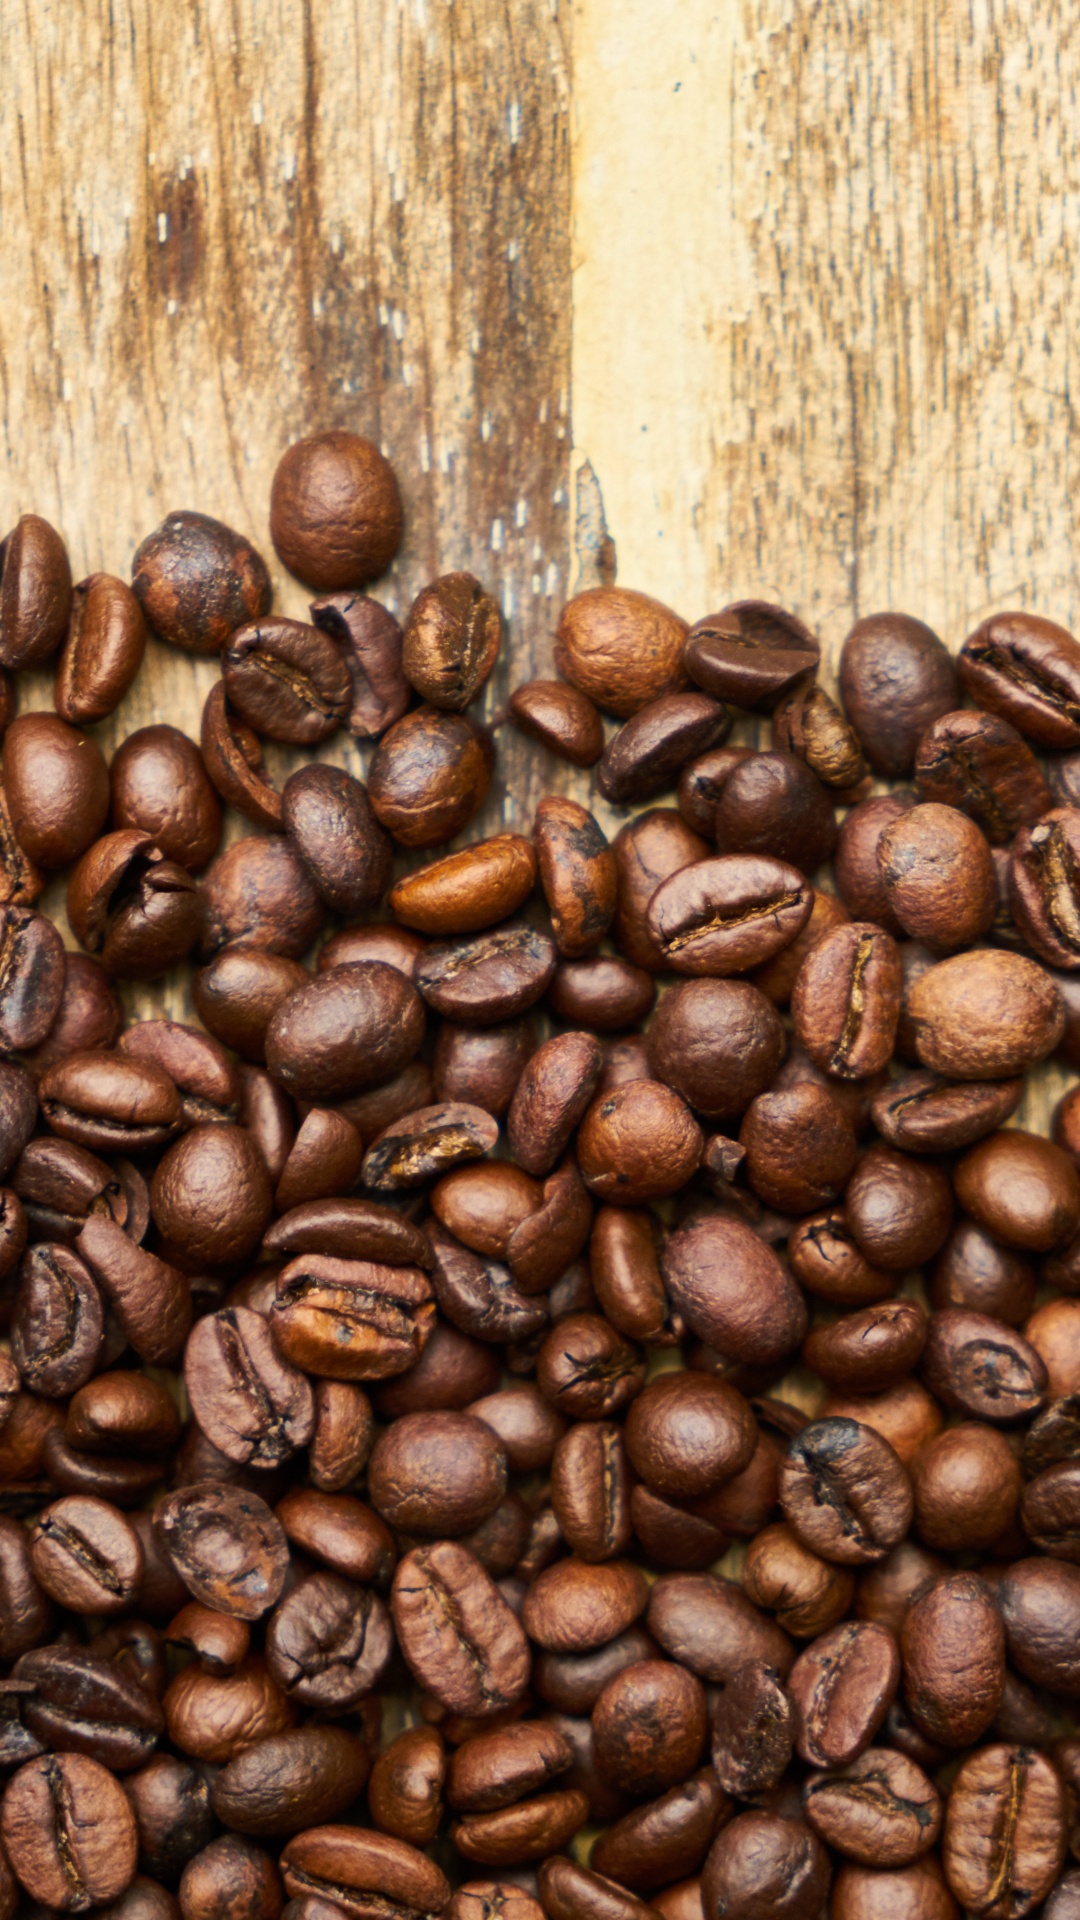 咖啡豆, 科纳咖啡, 牙买加蓝山咖啡, 咖啡因, 棕色 壁纸 1080x1920 允许